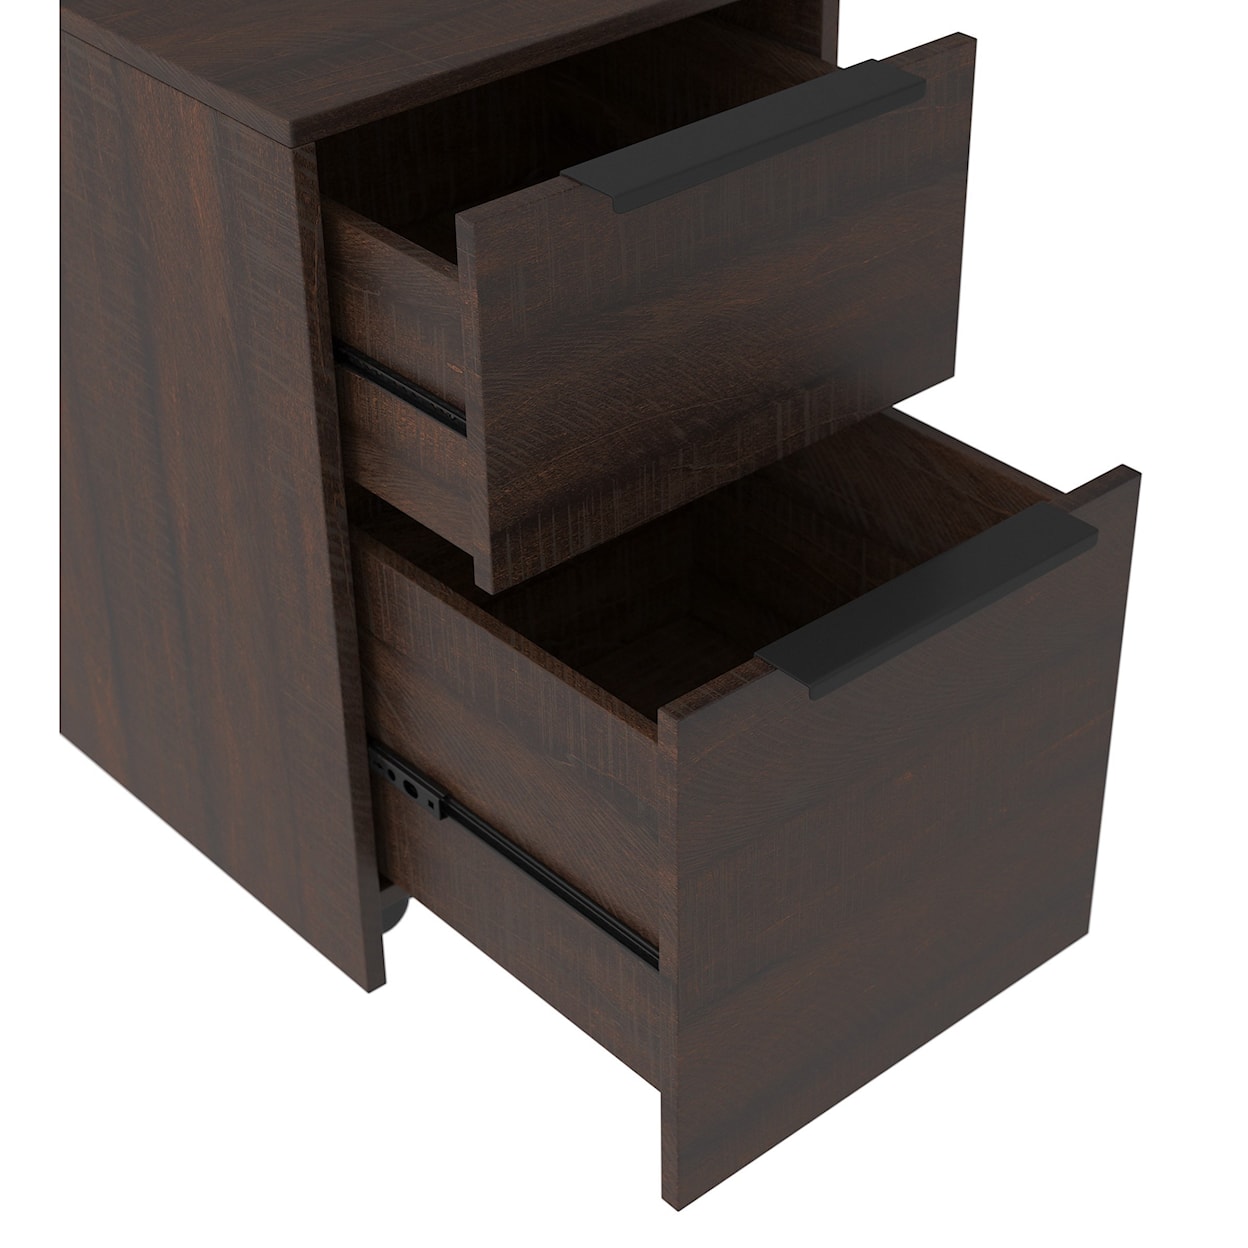 Ashley Furniture Signature Design Camiburg File Cabinet